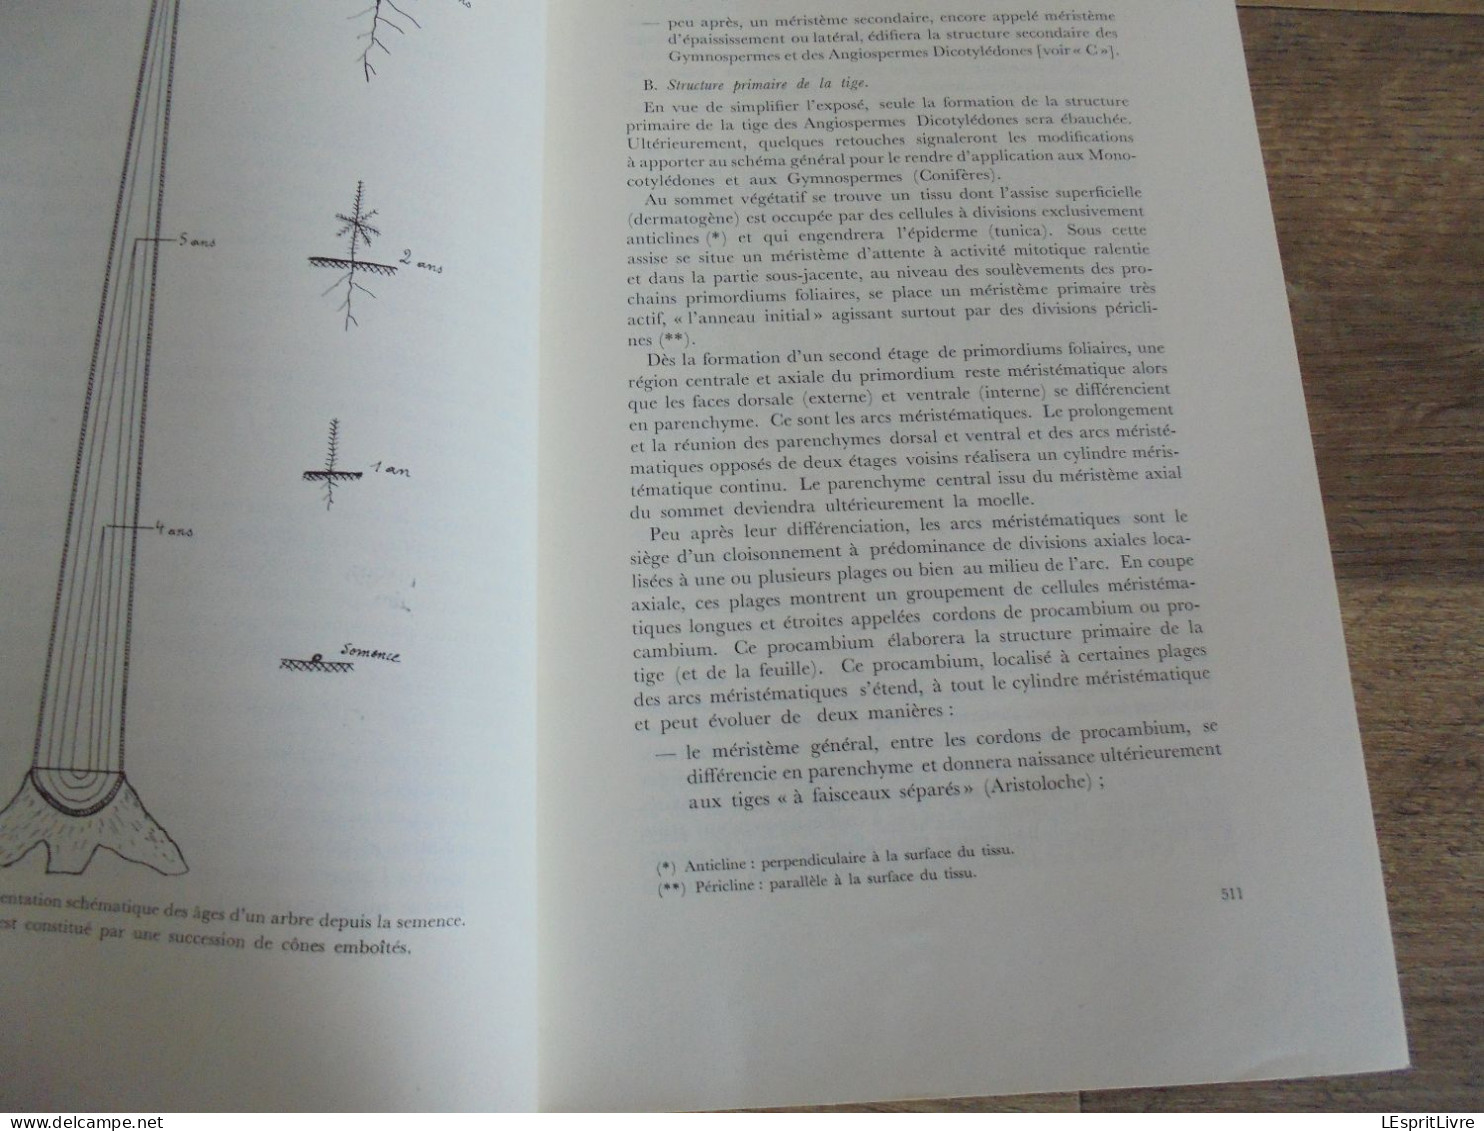 LES NATURALISTES BELGES N° 10 Année 1971 Régionalisme Anatomie Du Bois Baléares Arbres Végétation Botanique Flore - Belgique